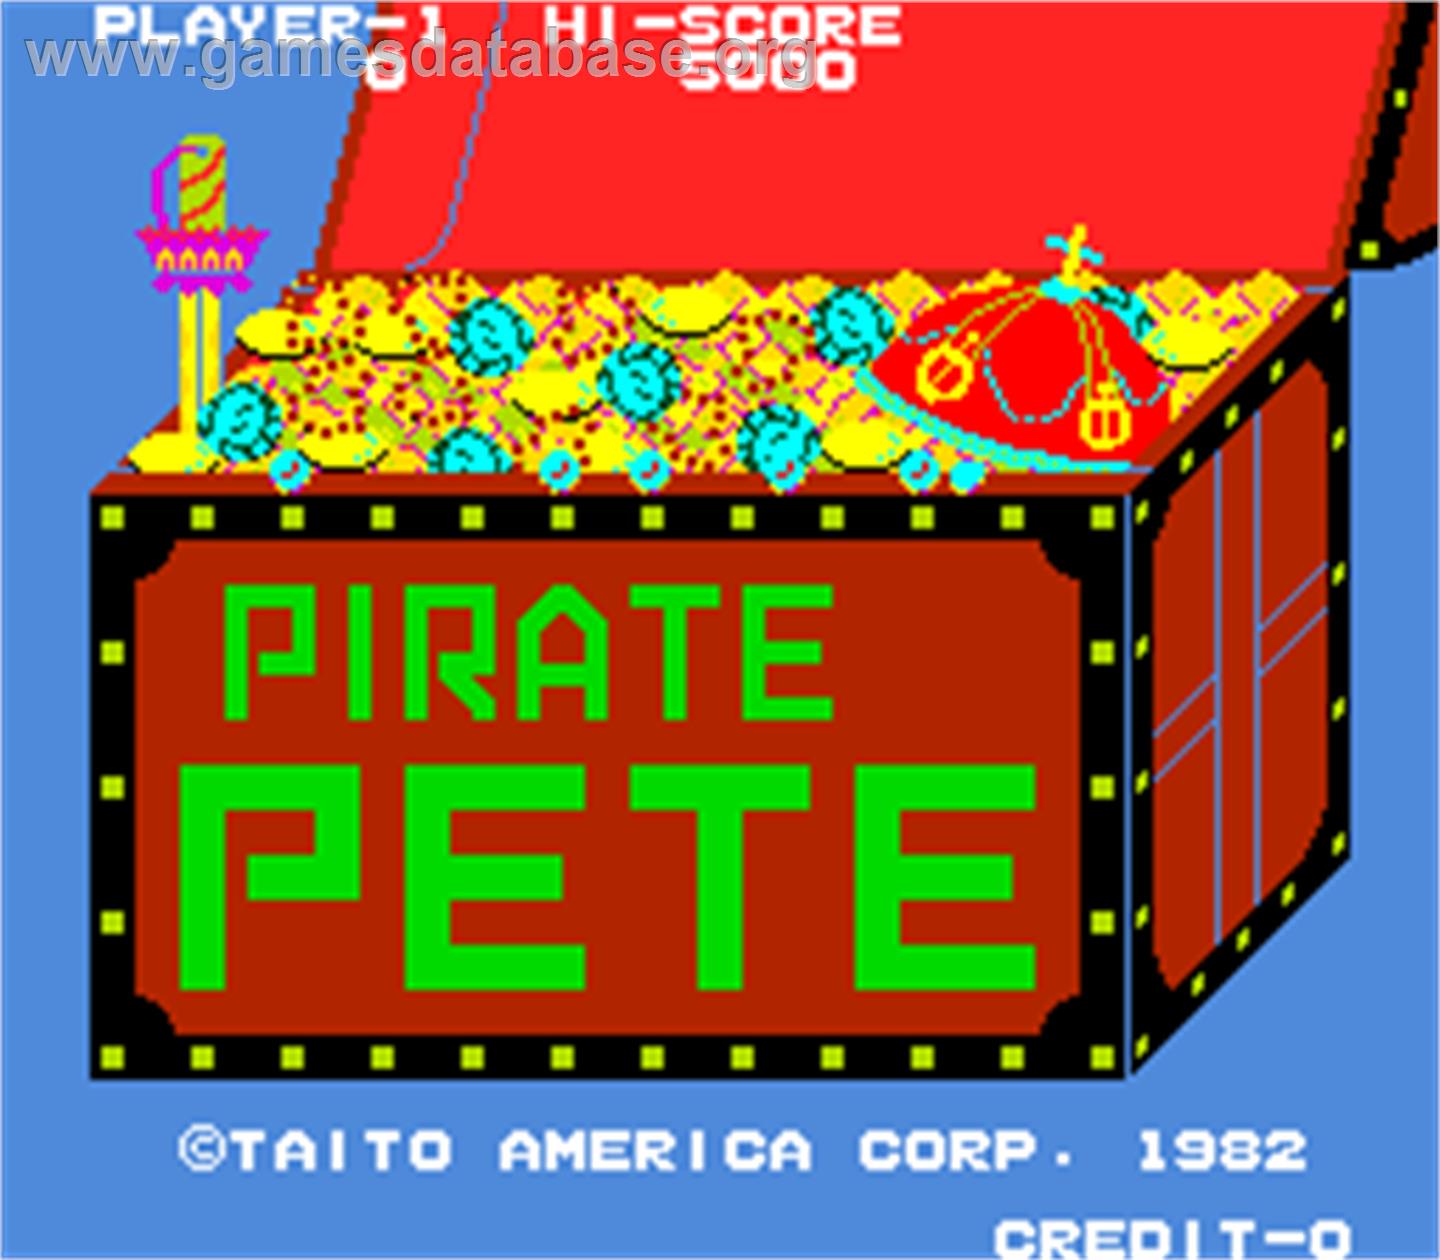 Pirate Pete - Arcade - Artwork - Title Screen